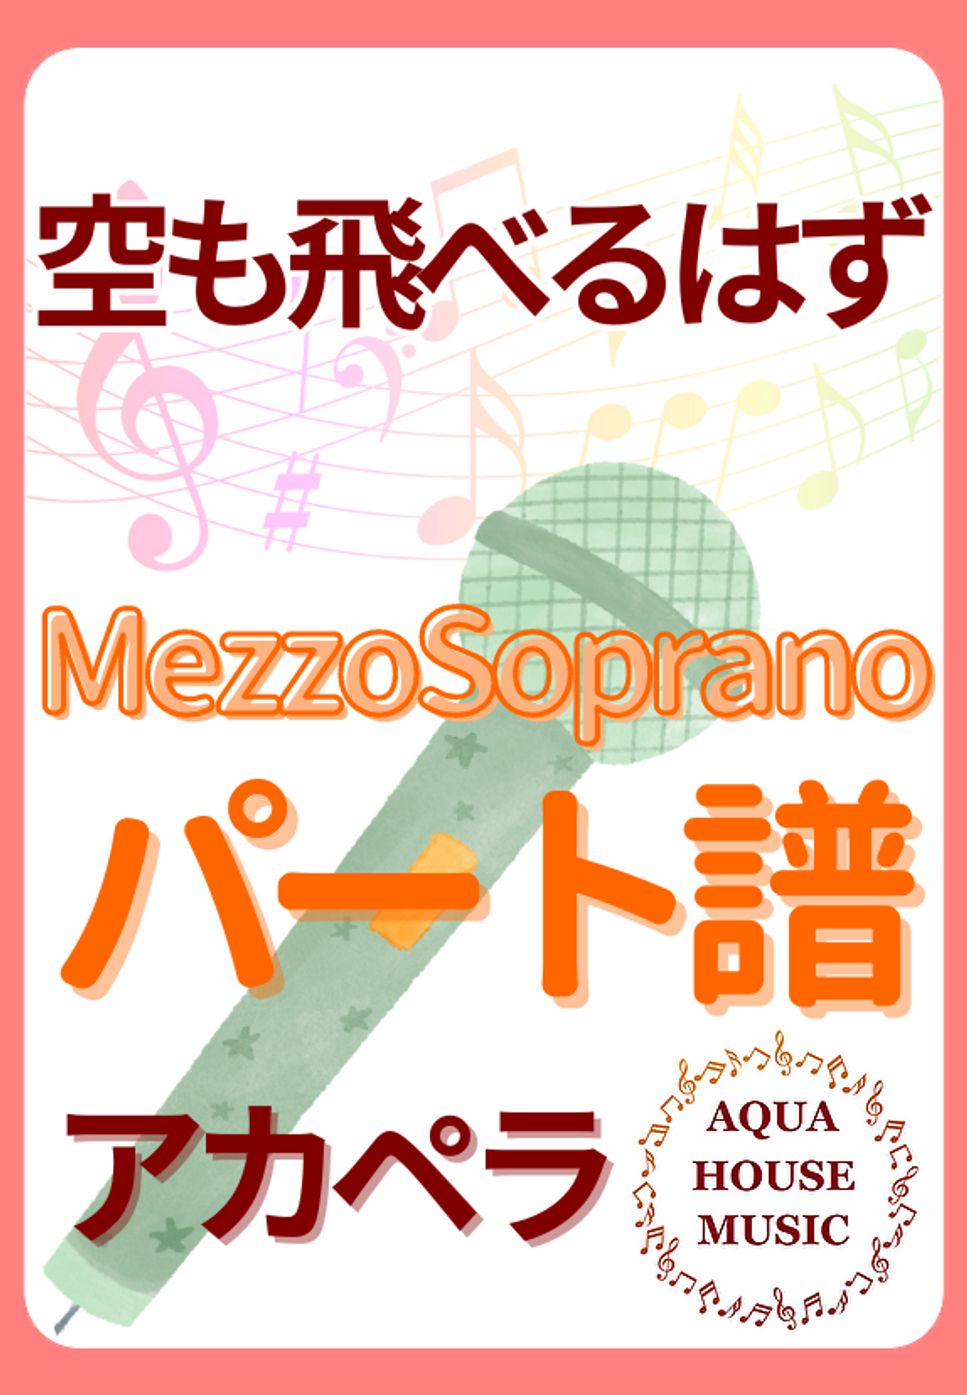 スピッツ - 空も飛べるはず (アカペラ楽譜♪MezzoSopranoパート譜) by 飯田 亜紗子